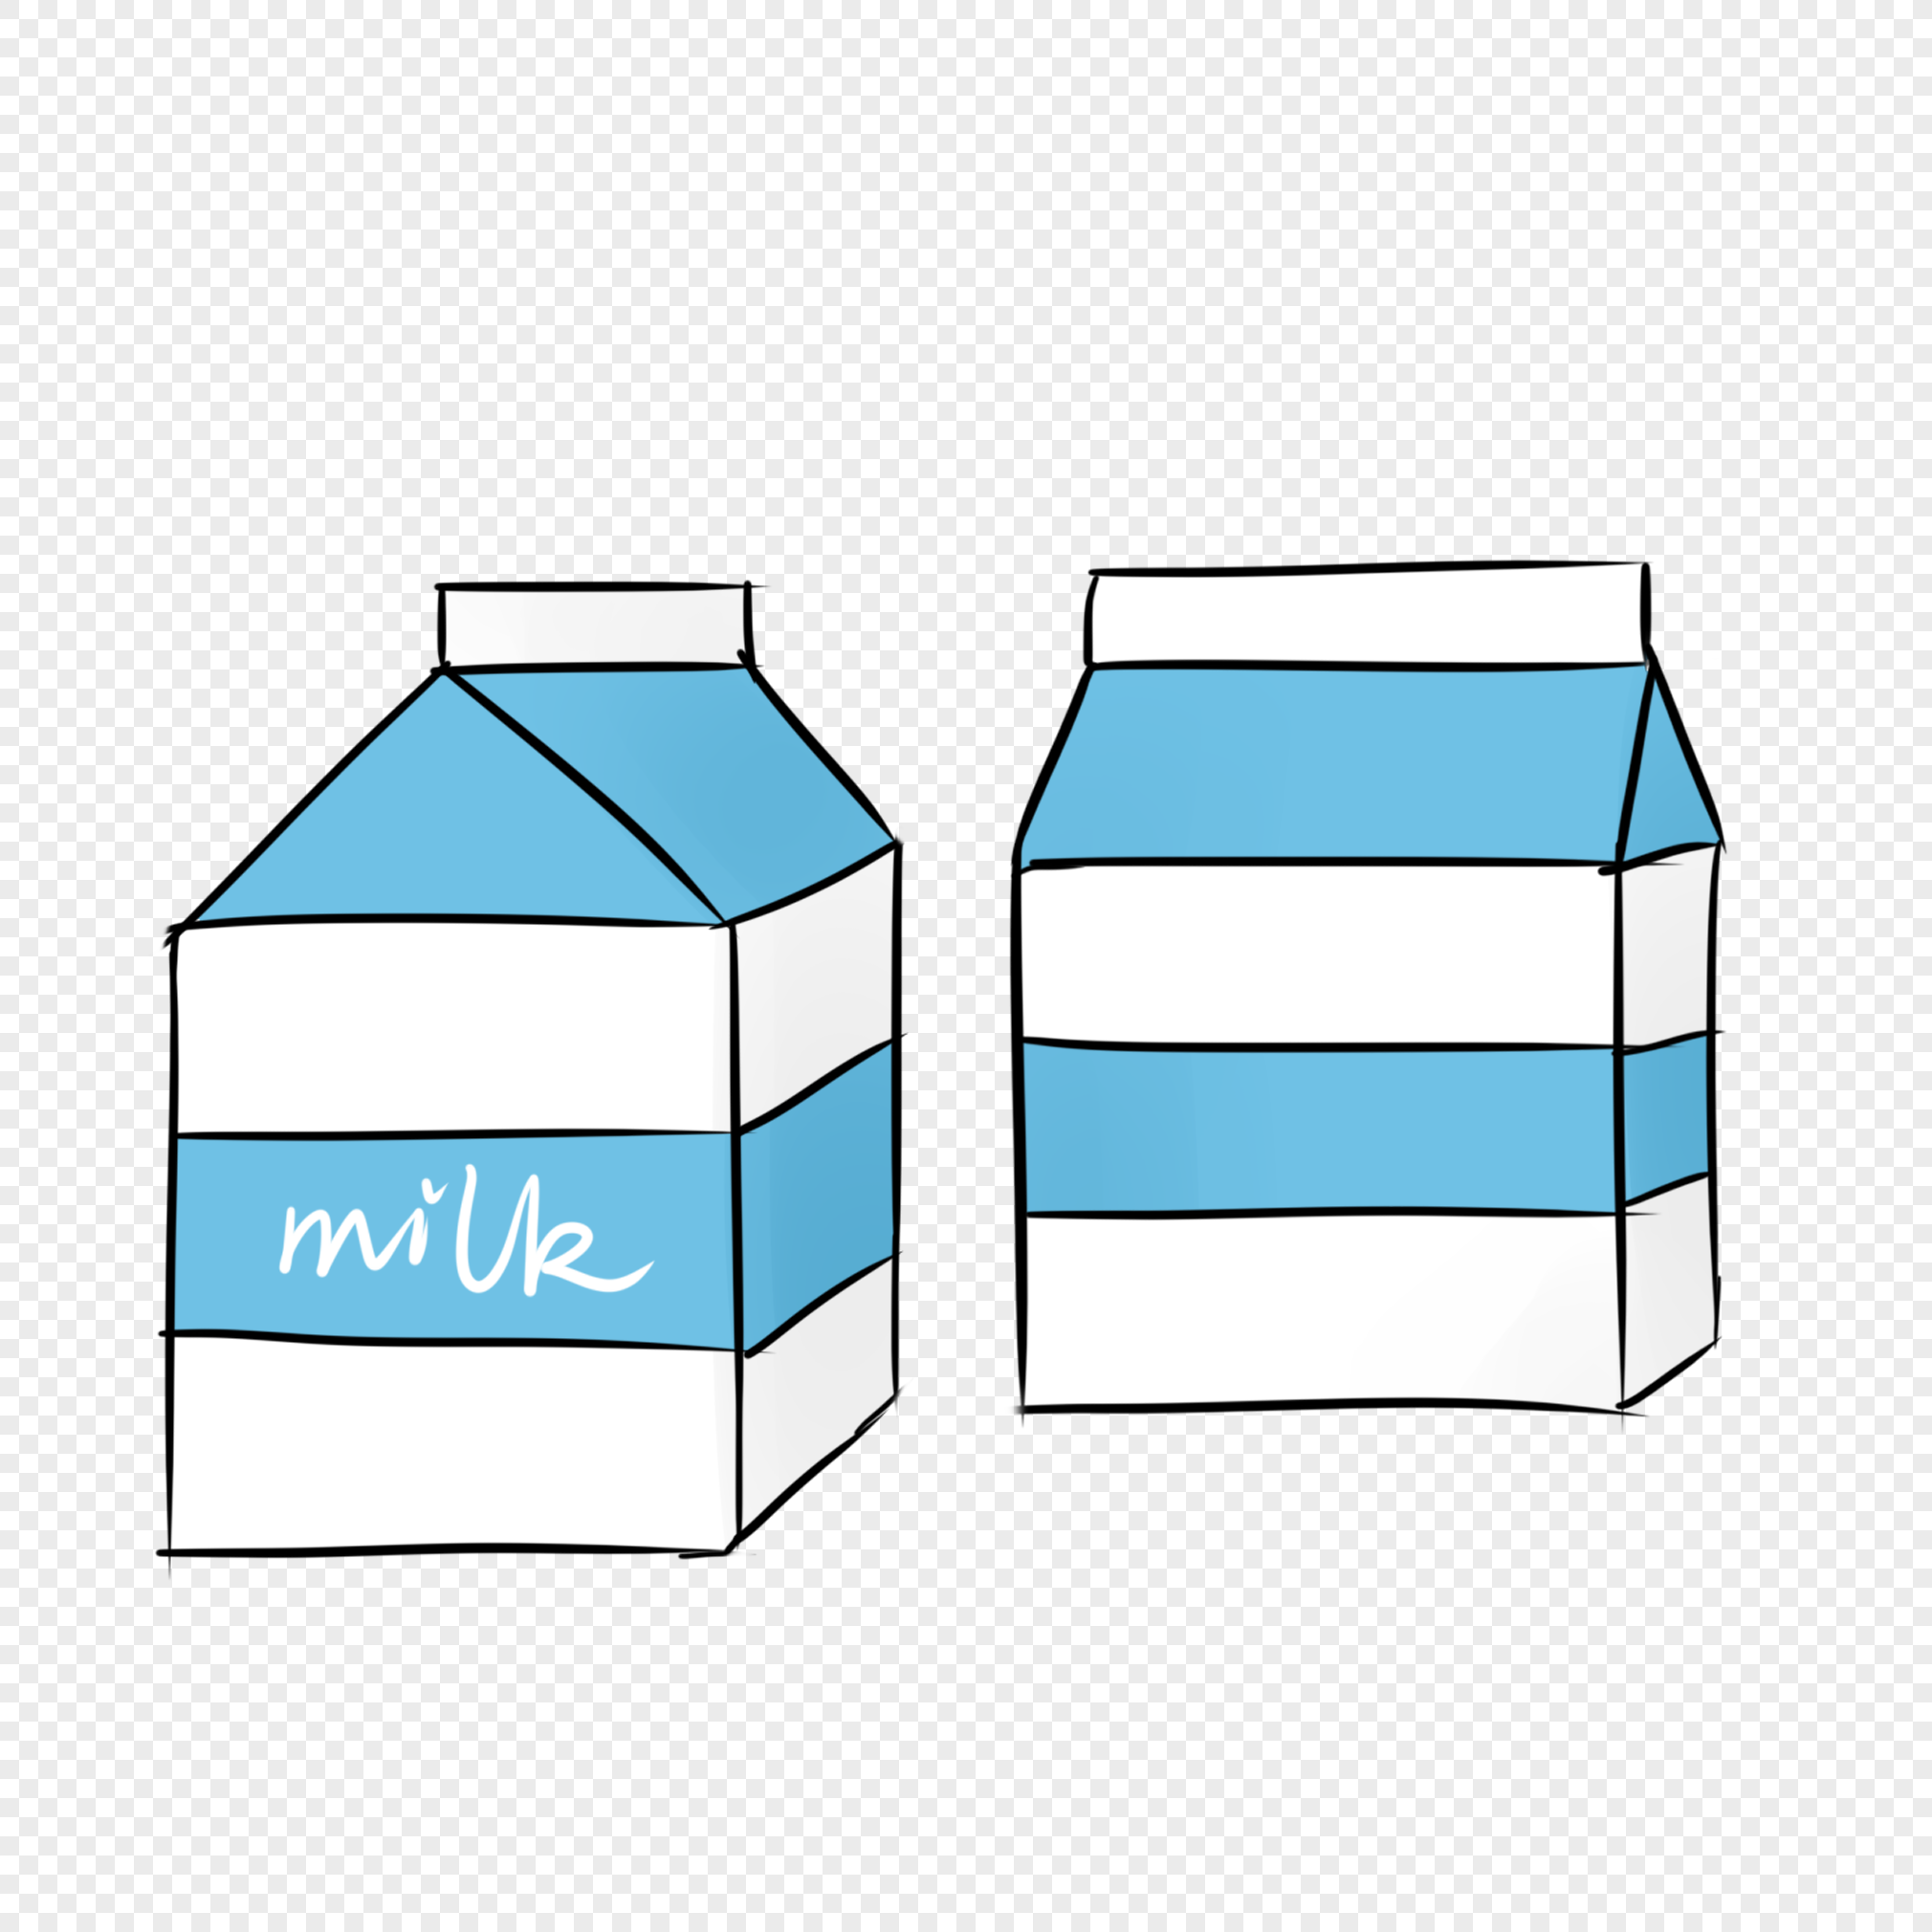 Изображения для иллюстратора коробка молока